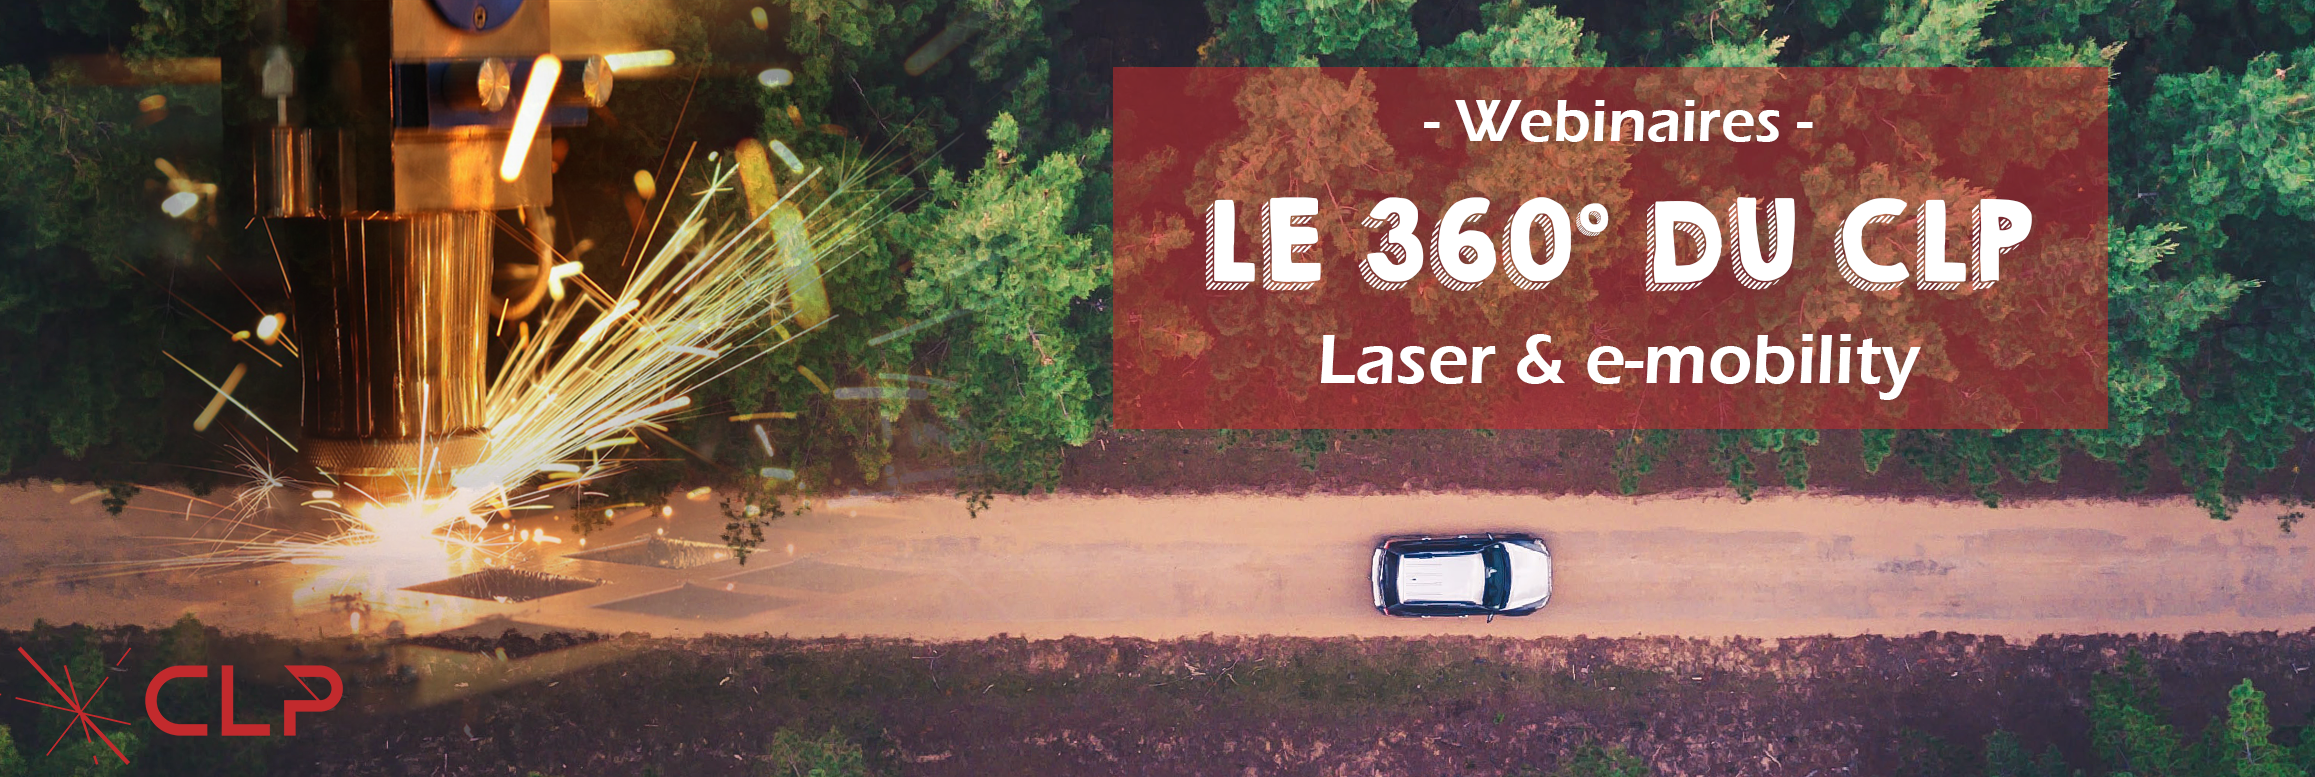 REPLAY WEBINAIRES "LE 360° DU CLP" - LASER & E-MOBILITY 